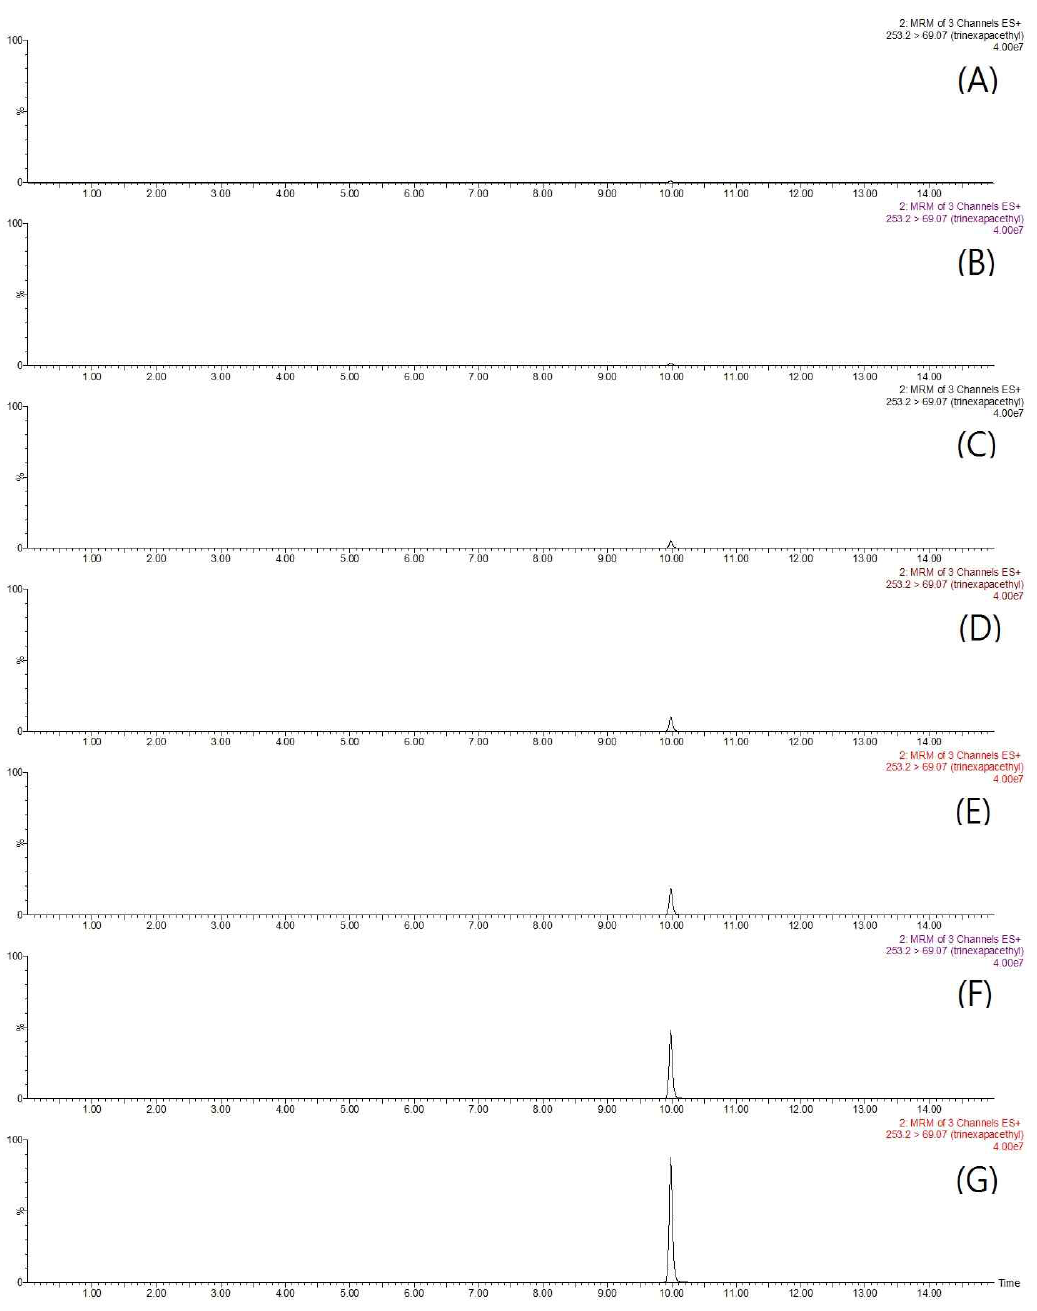 LC-MS/MS chromatograms of trinexapac-ethyl standard in pepper matrix (A) 0.01 mg/kg, (B) 0.02 mg/kg, (C) 0.05 mg/kg, (D) 0.1 mg/kg, (E) 0.2 mg/kg, (F) 0.5 mg/kg, and (G) 1 mg/kg